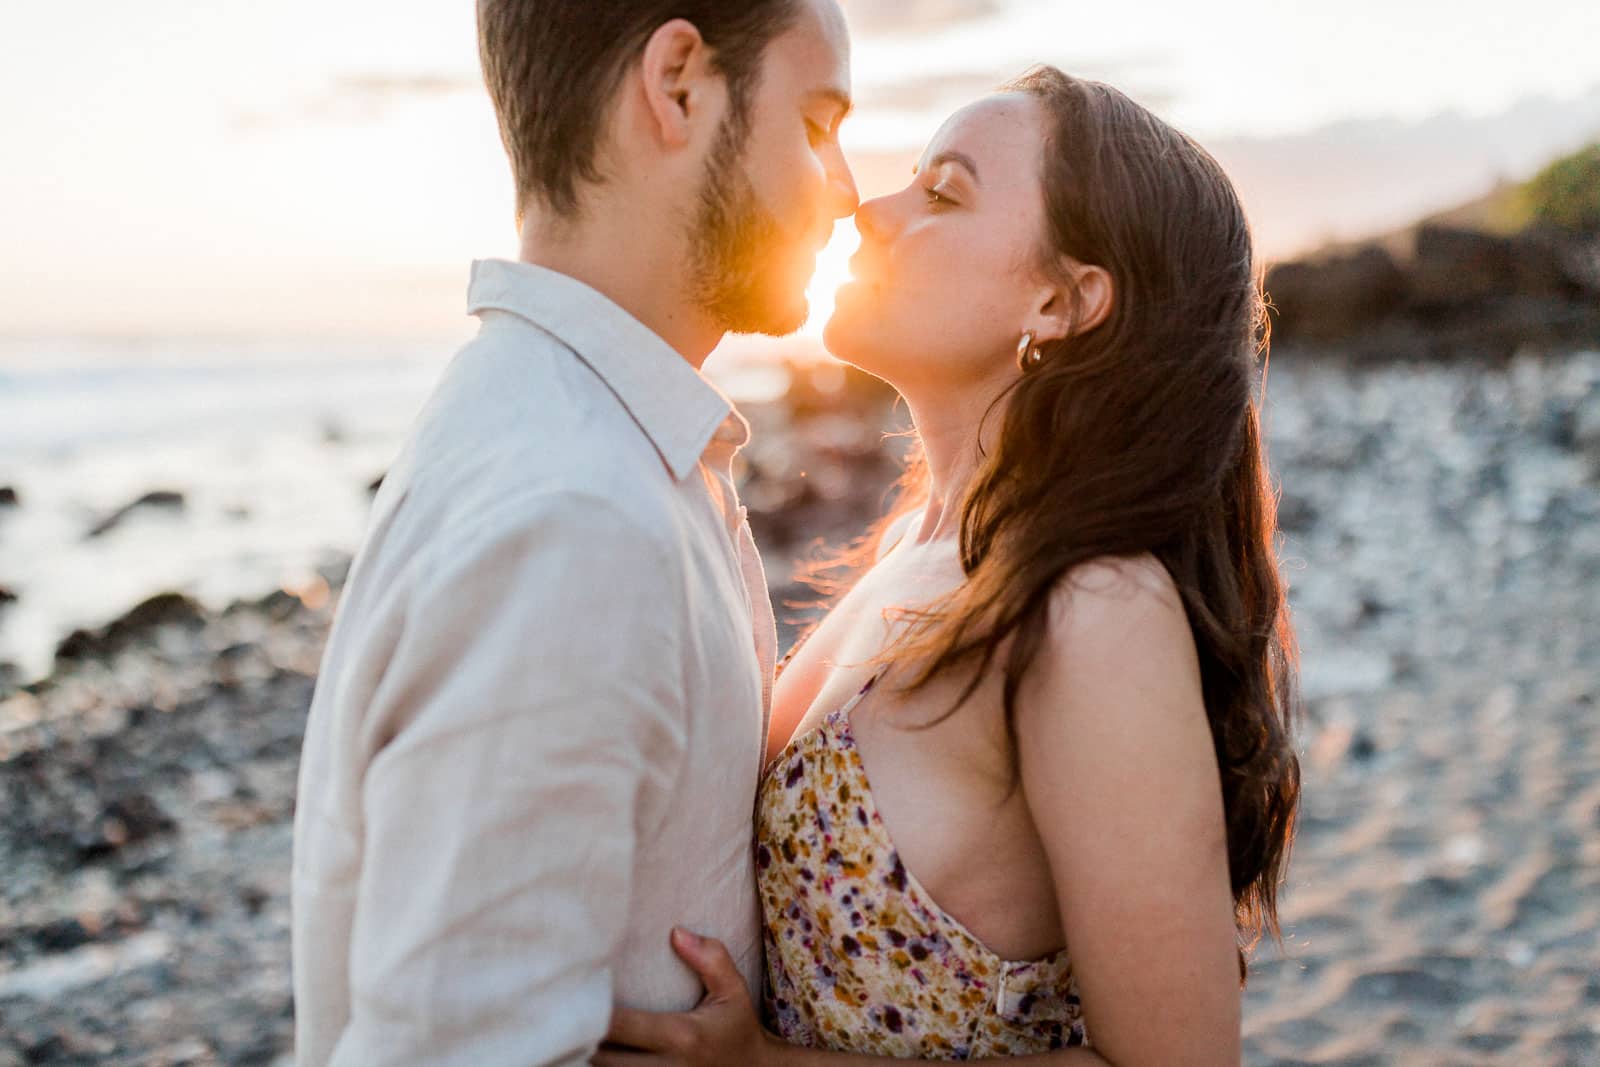 Photographie de Mathieu Dété, photographe de mariage et de couple à Saint-Joseph sur l'île de la Réunion 974, présentant un couple s'embrassant devant le soleil couchant à Petite Ile